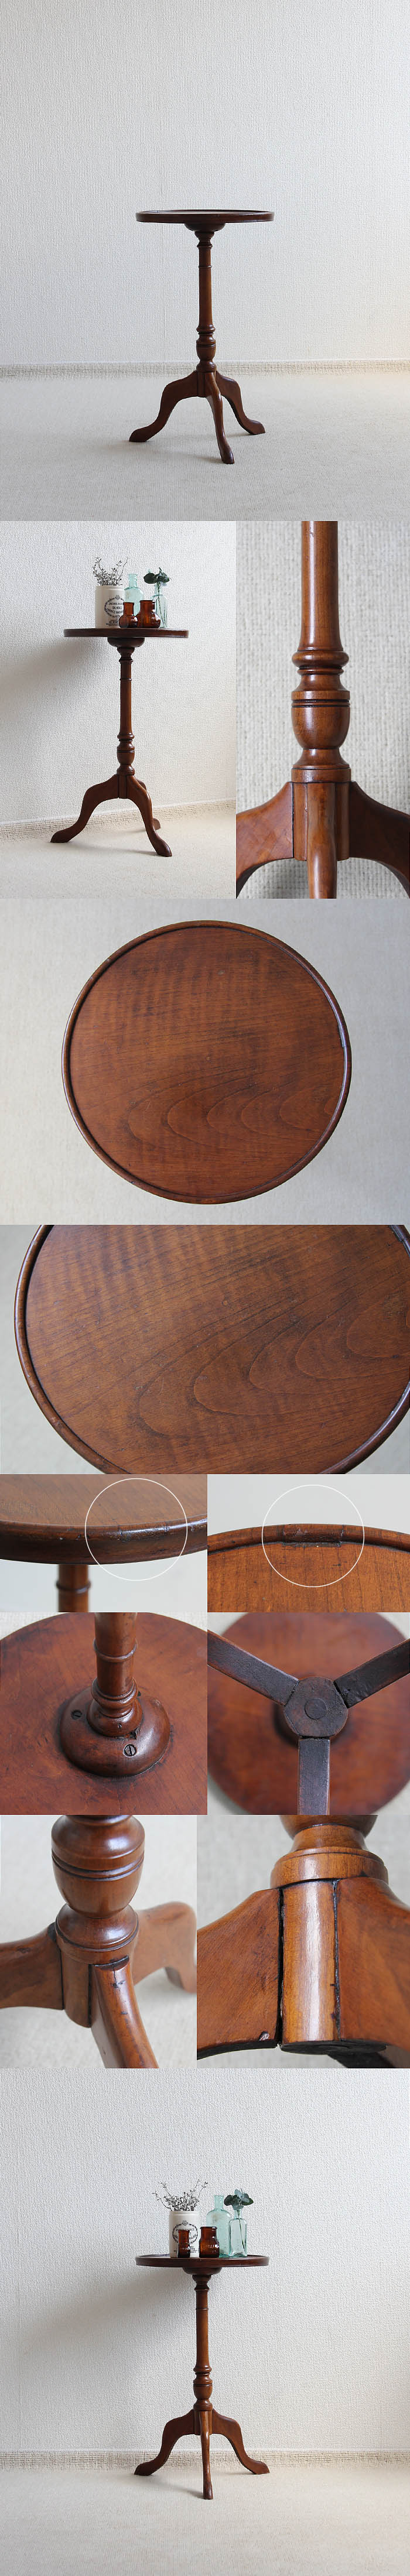 イギリス アンティーク ワインテーブル 木製 サイドテーブル インテリア 家具「花台にも」P-089